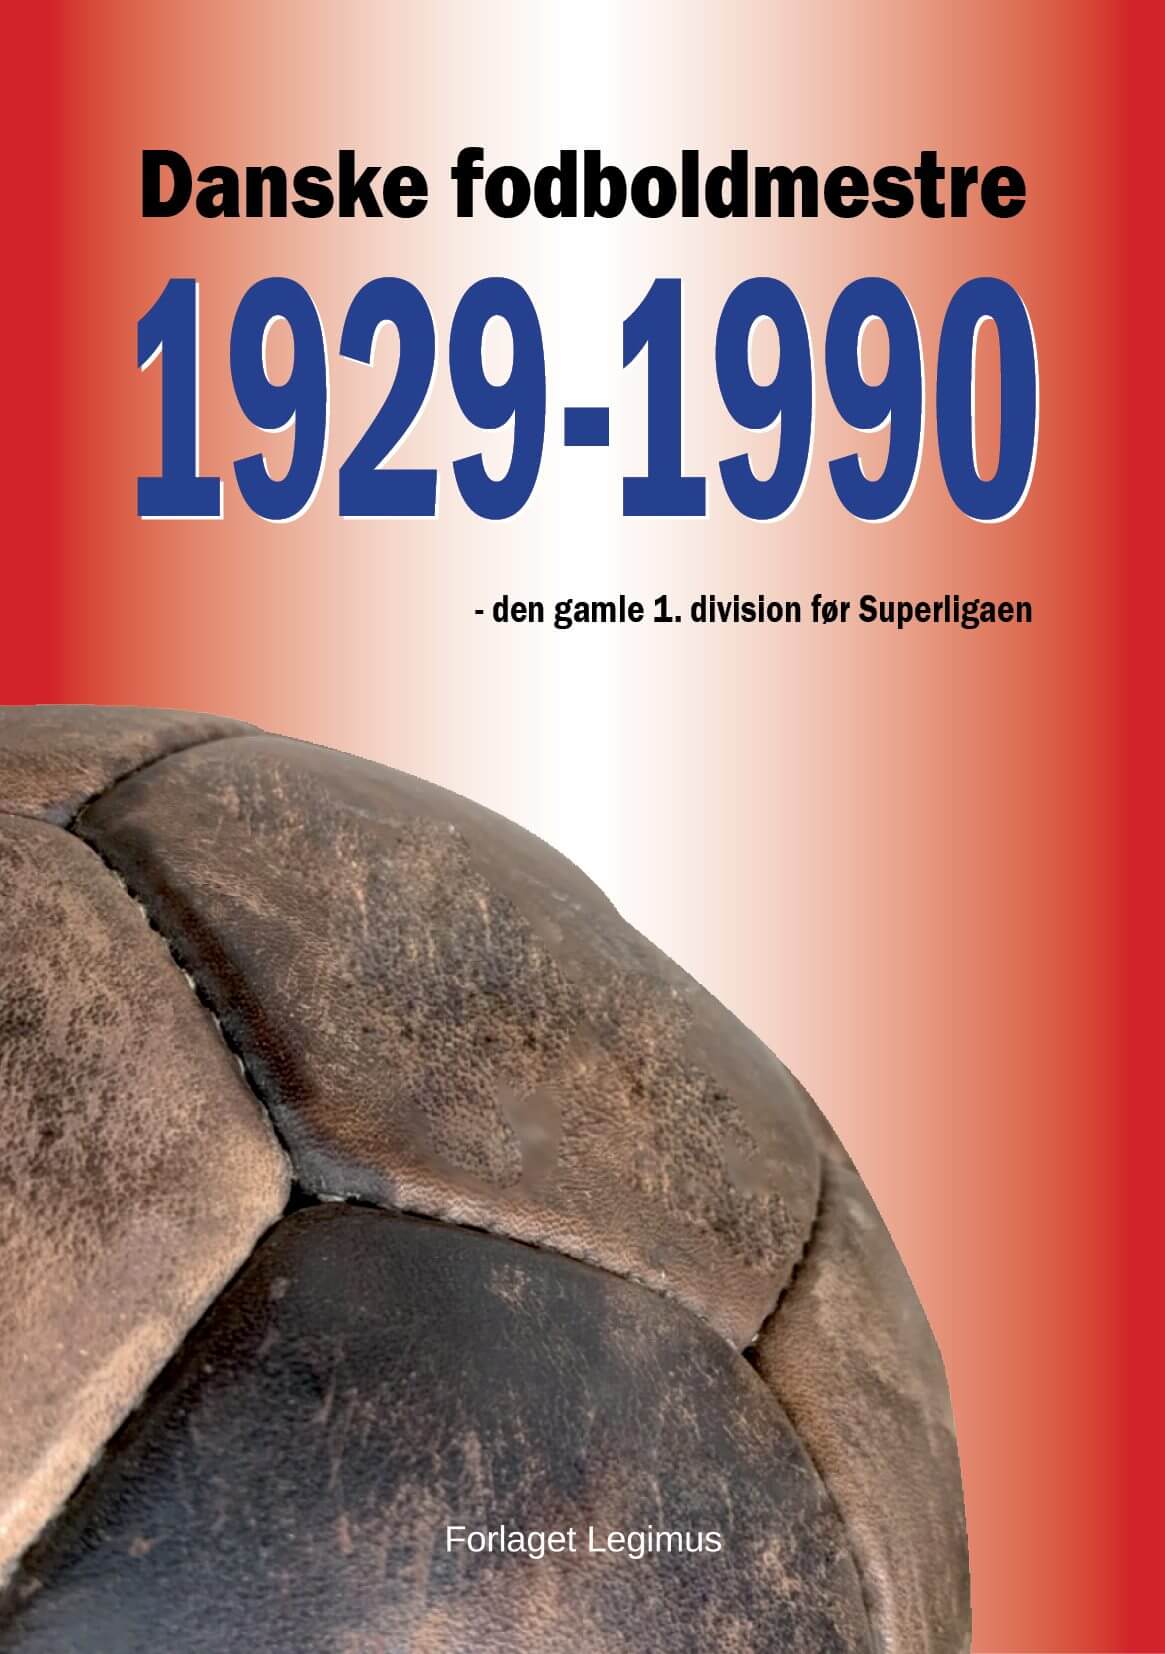 Ny bog går bag om den gamle 1. division i fodbold